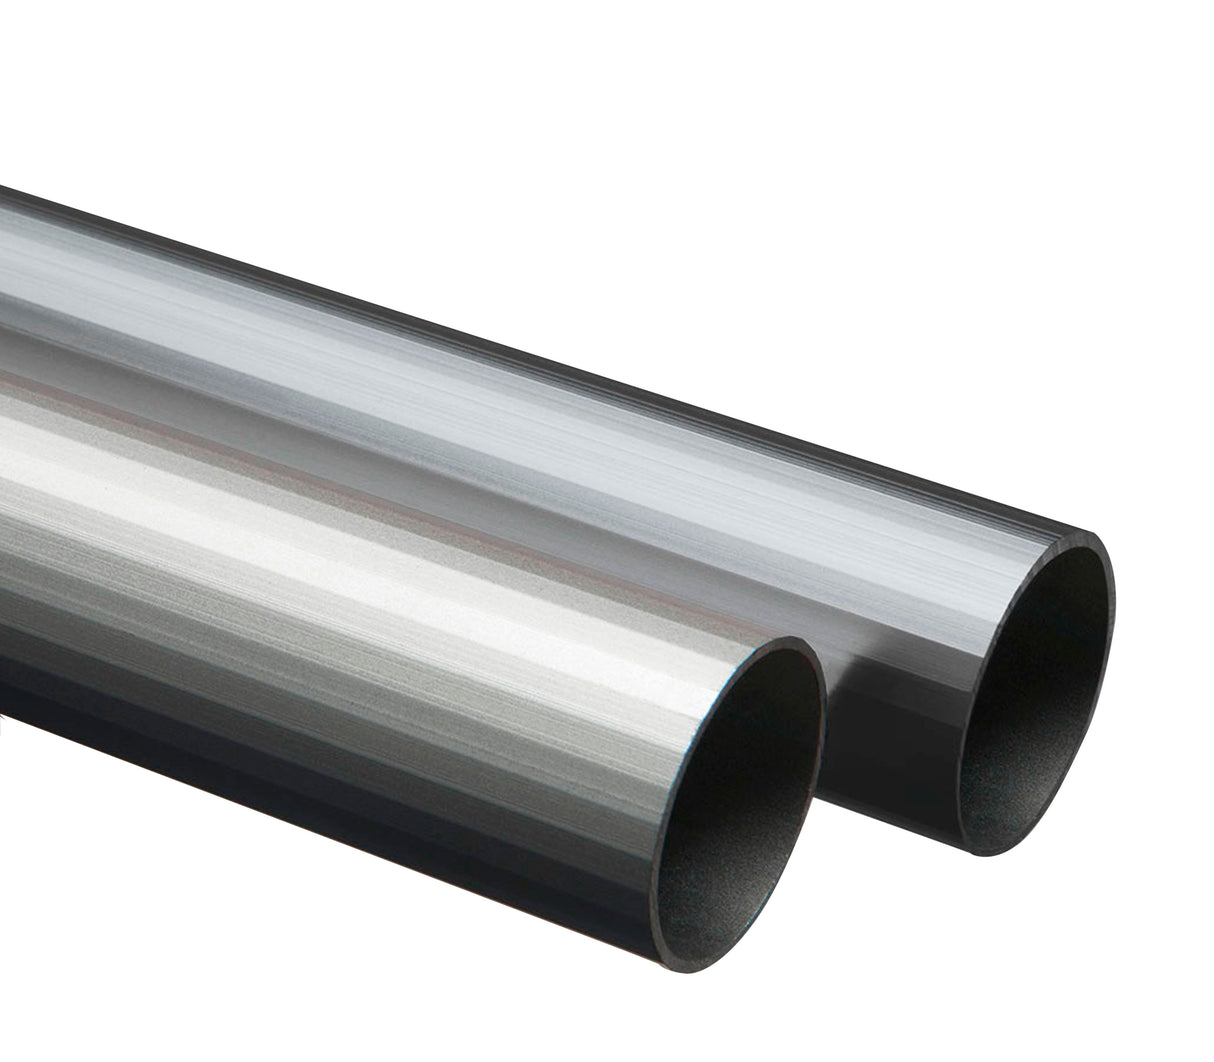 Tubo redondo de aluminio 16mm x 3m Tauro